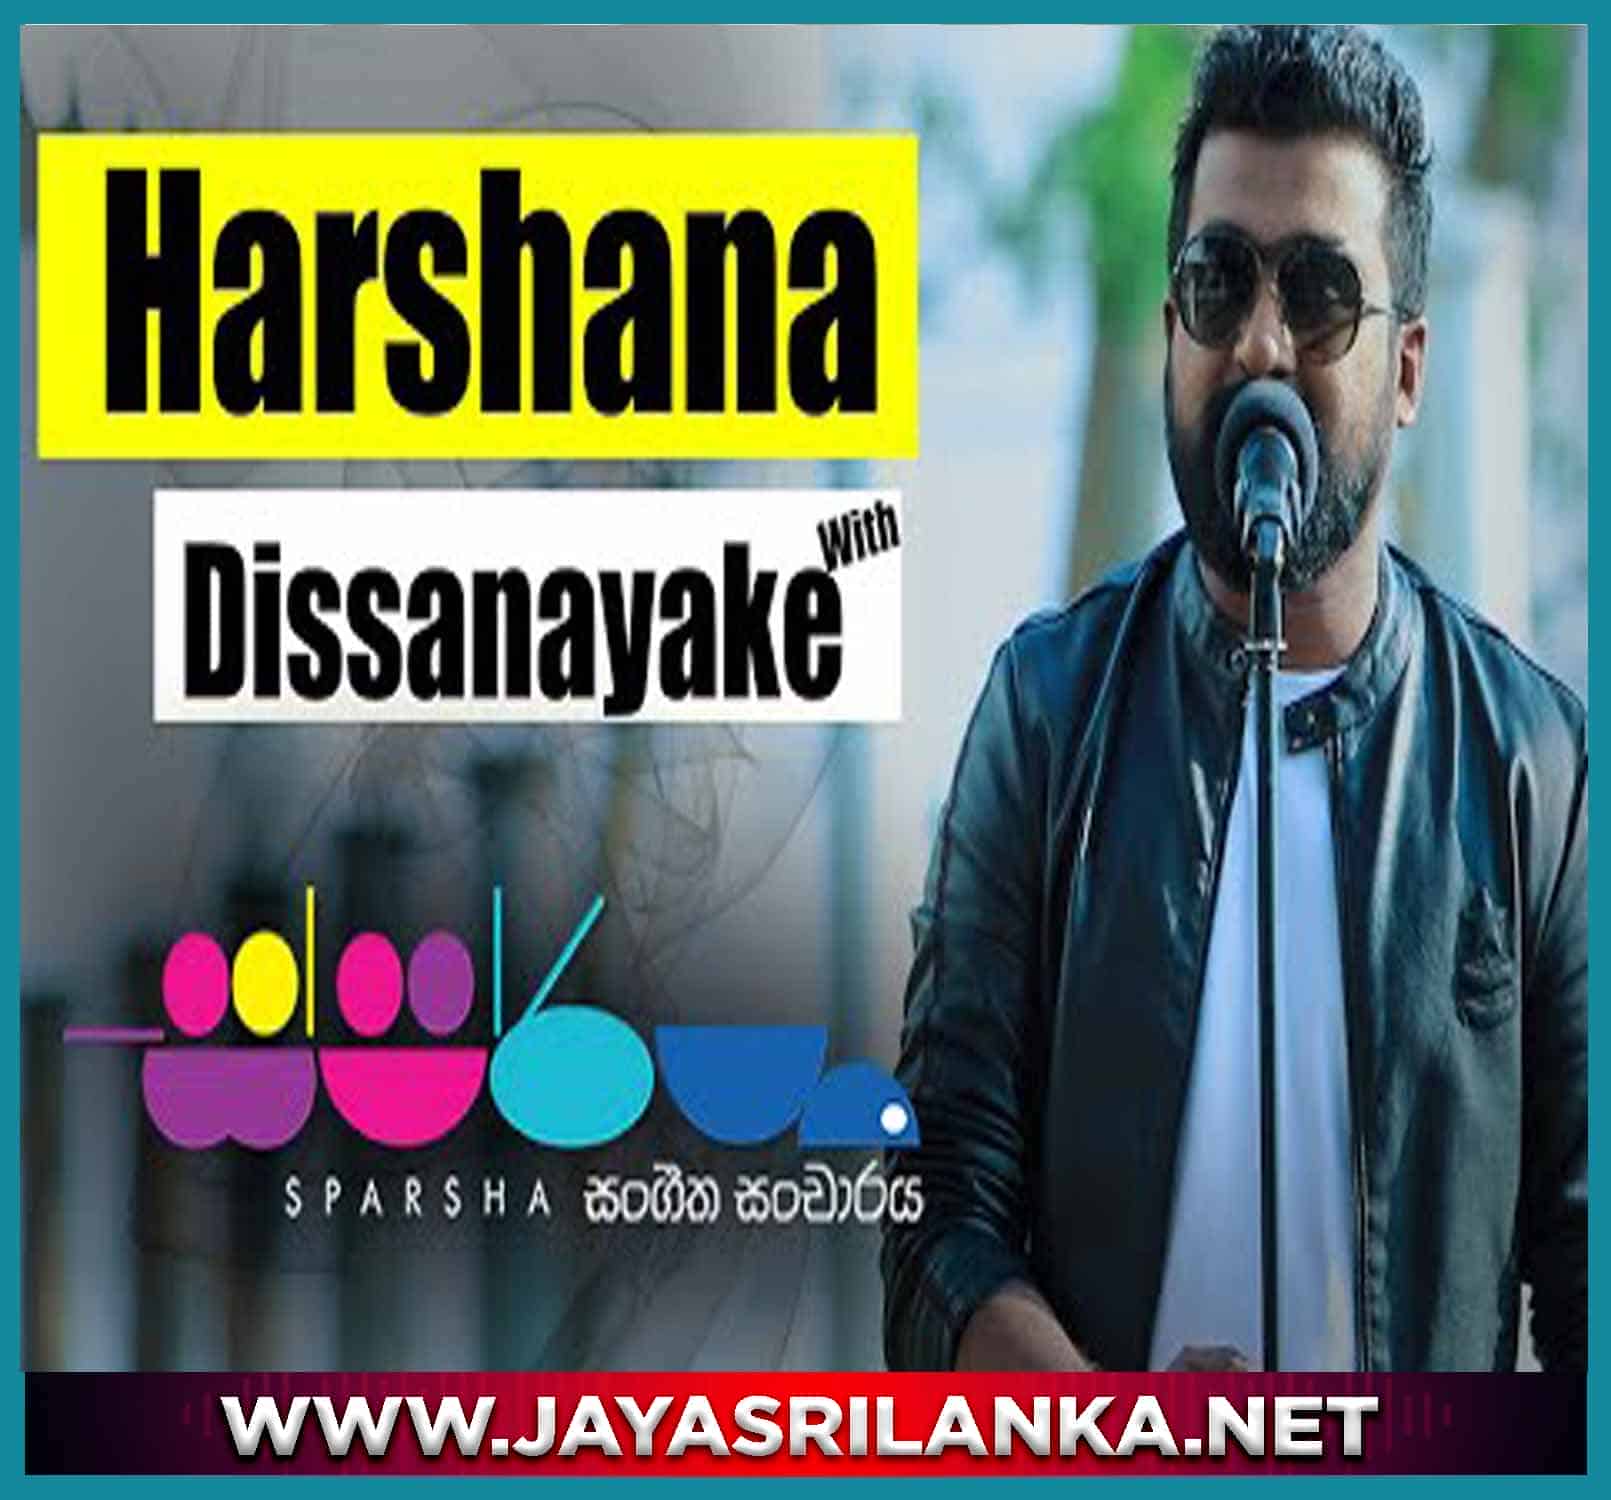 Sparsha With Harshana Dissanayake 2023-03-10 